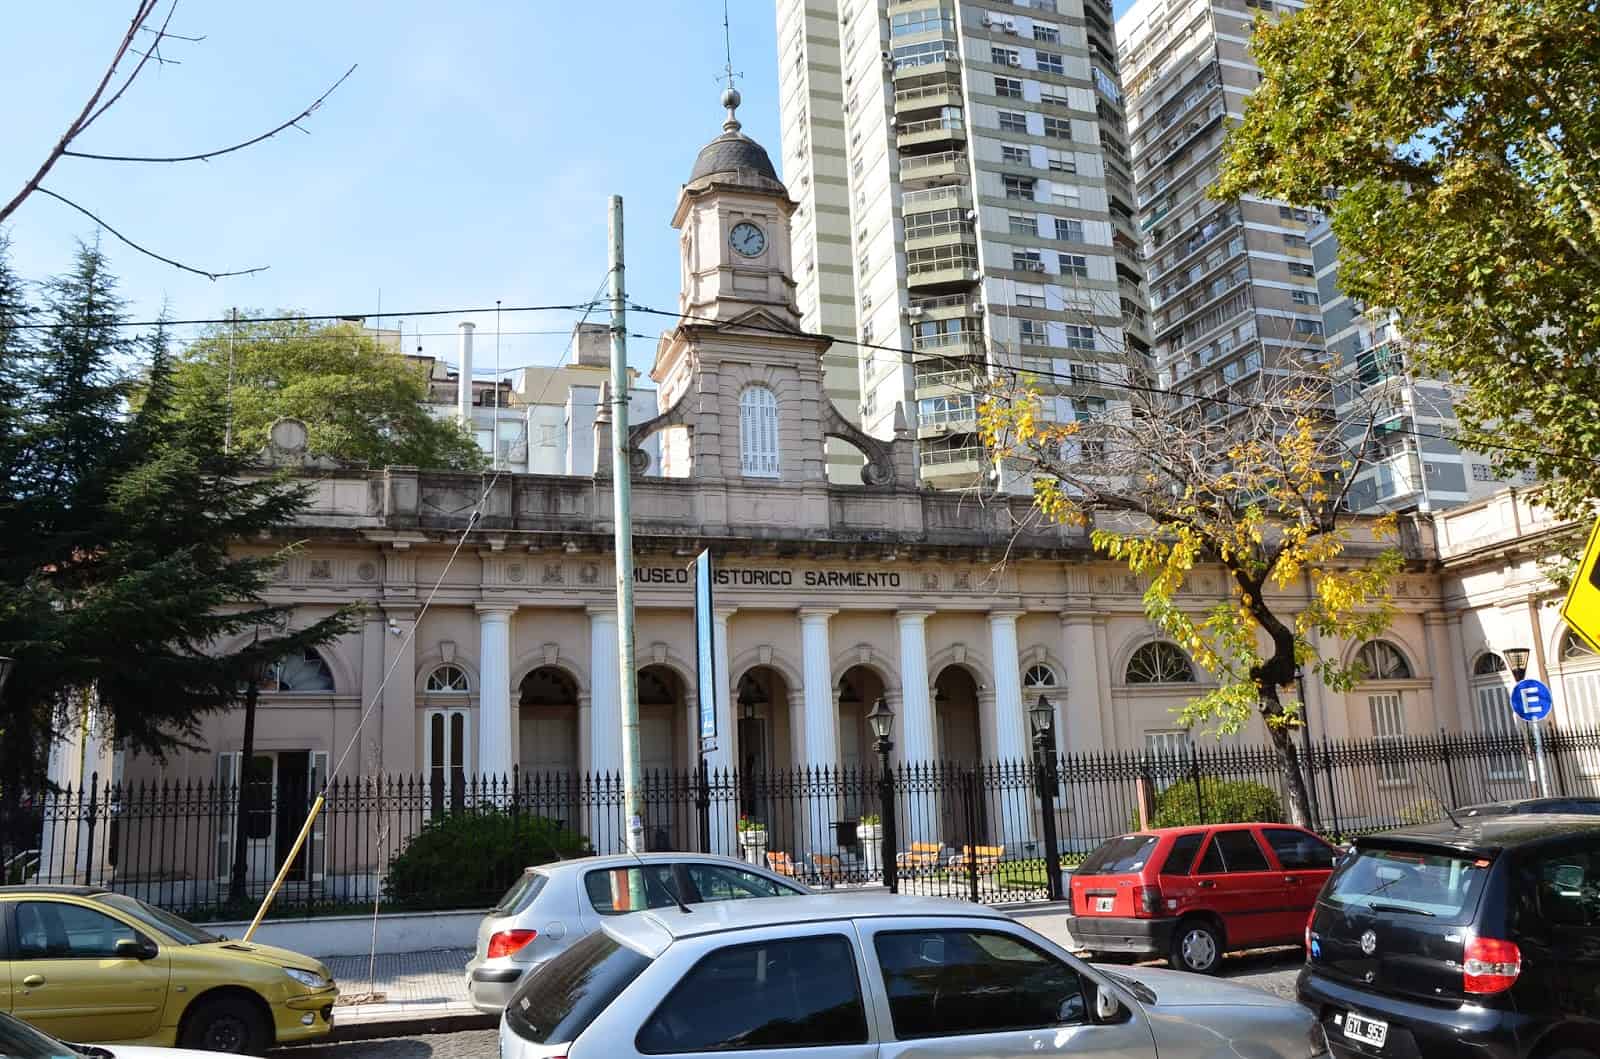 Museo Histórico Sarmiento in Belgrano, Buenos Aires, Argentina